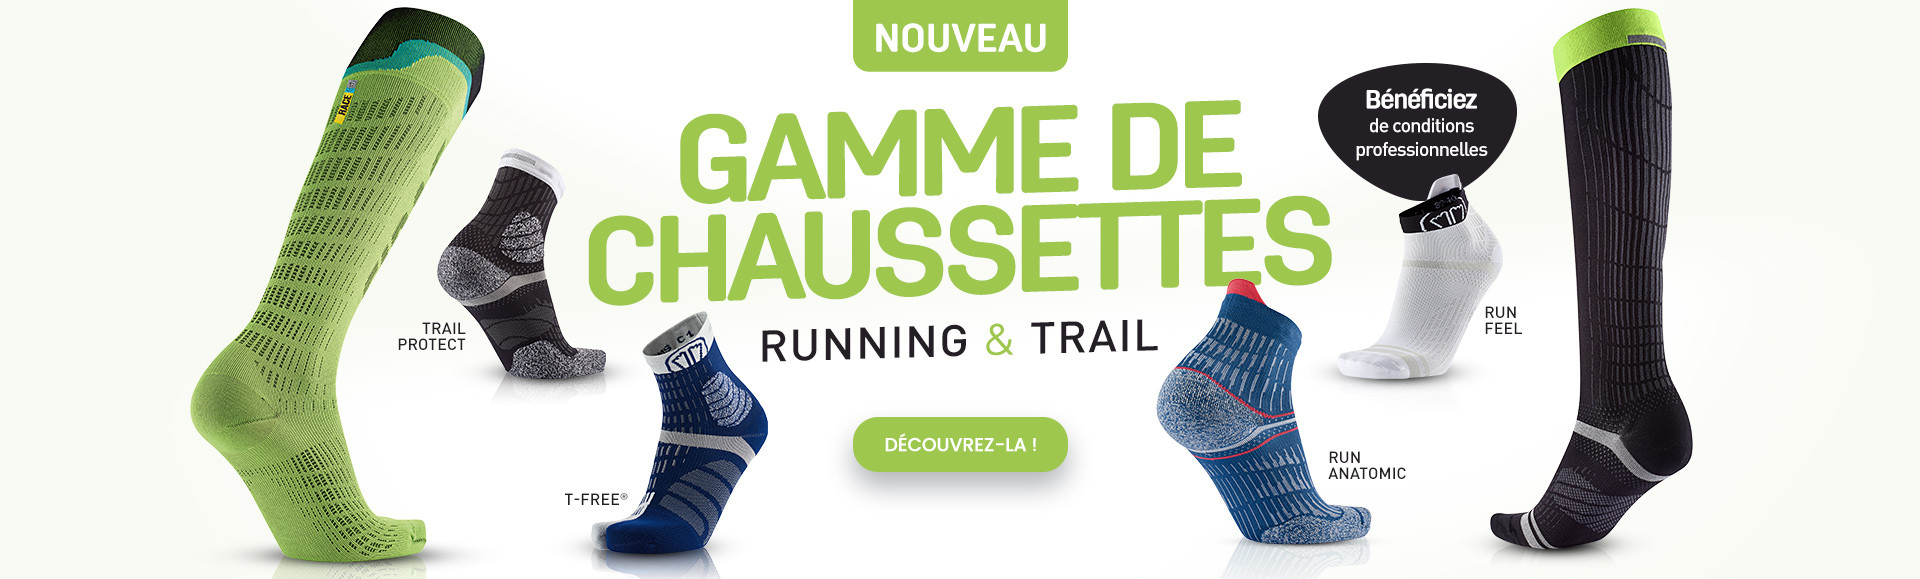 Nouveau : gamme de chaussettes running et trail !